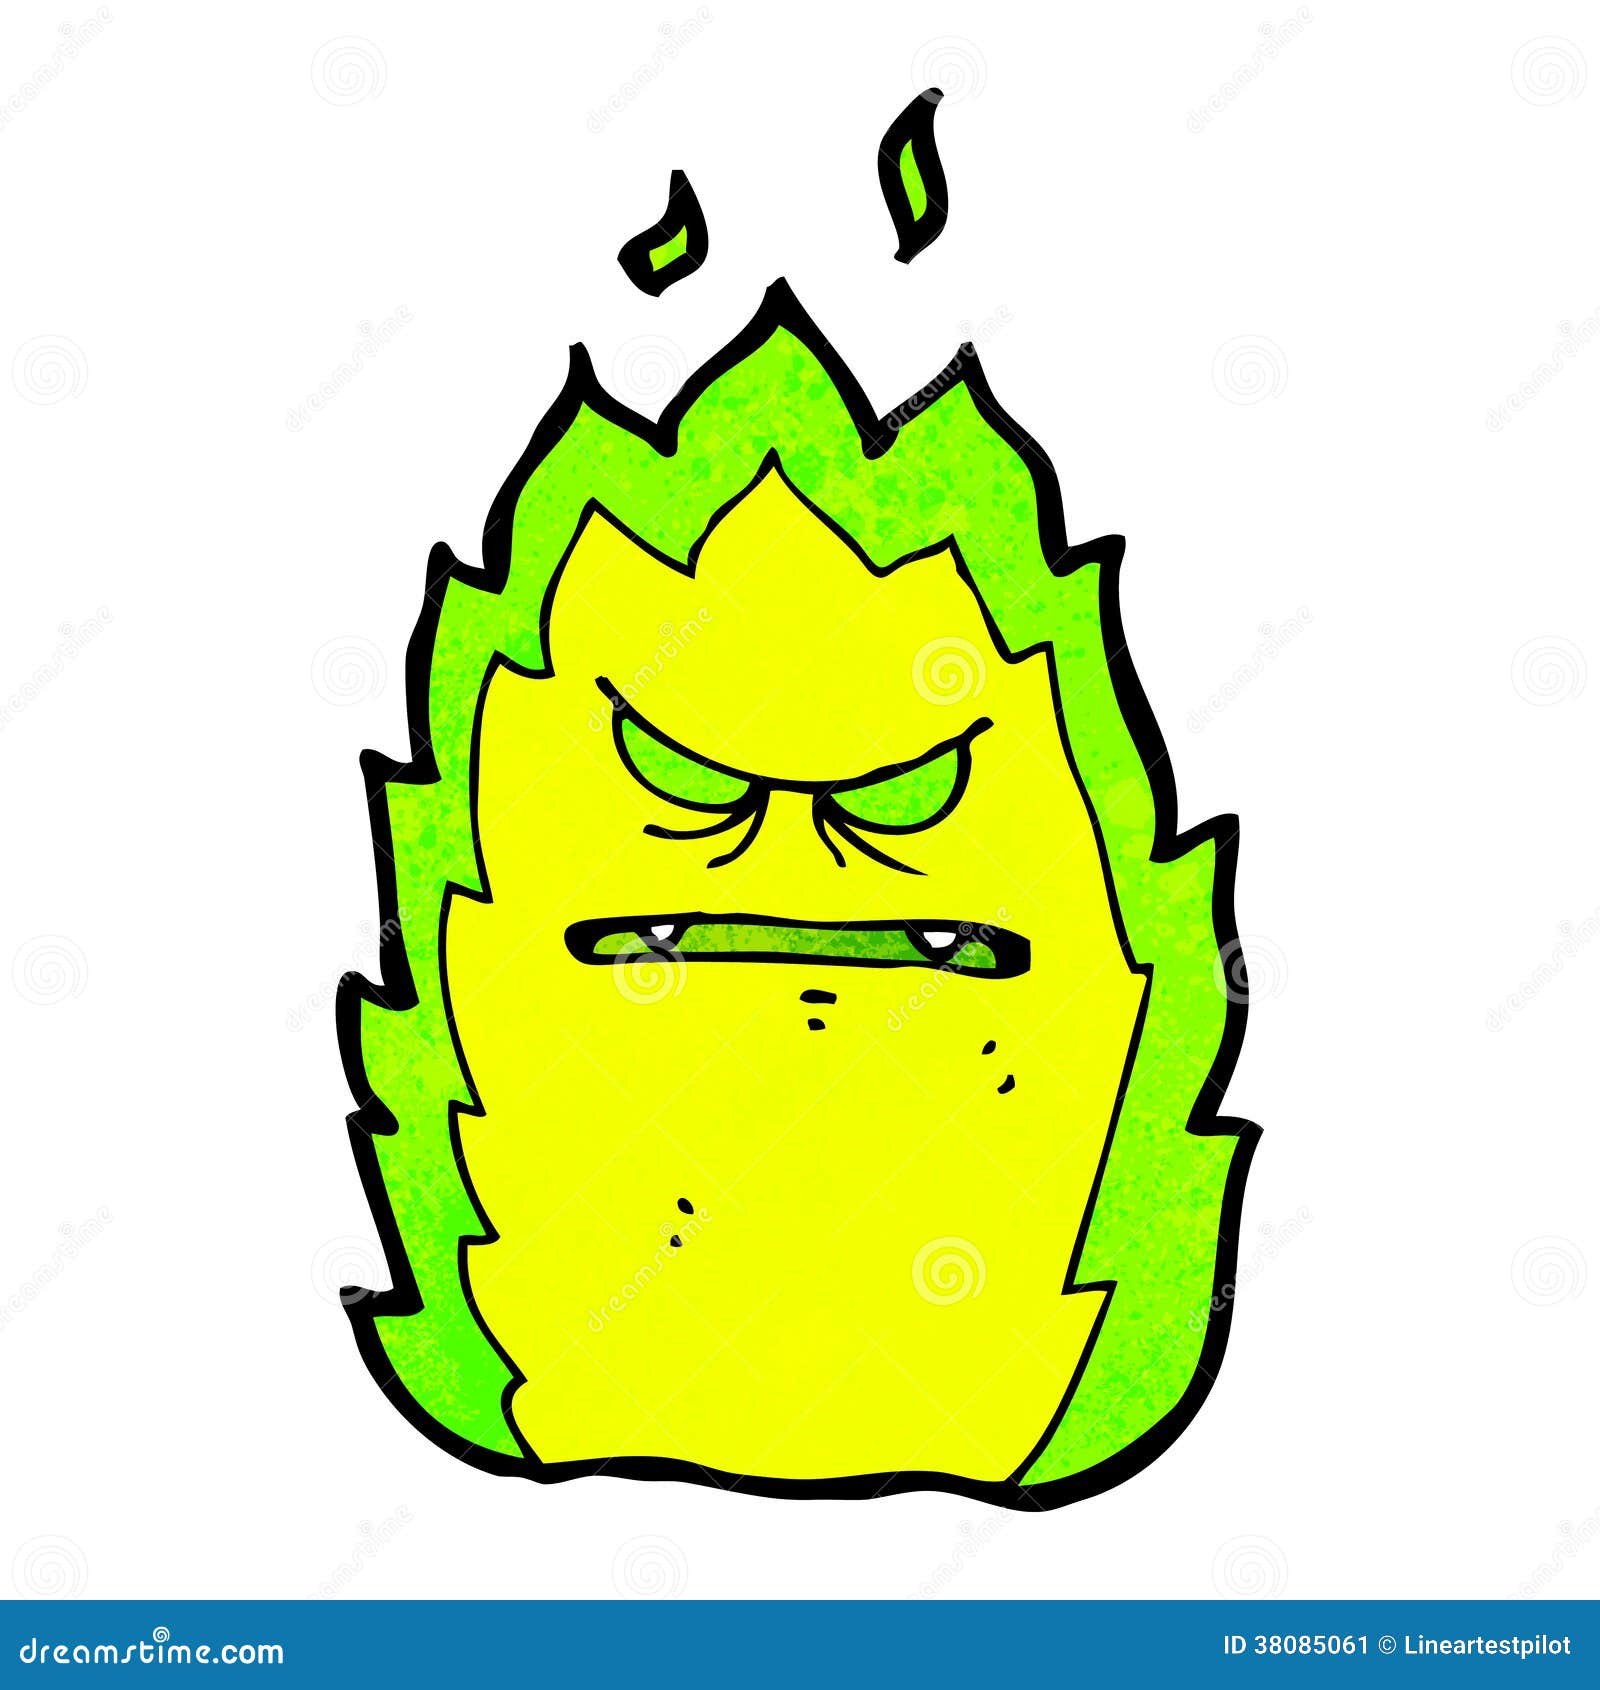 Cartoon green fire monster stock vector. Illustration of clip - 38085061